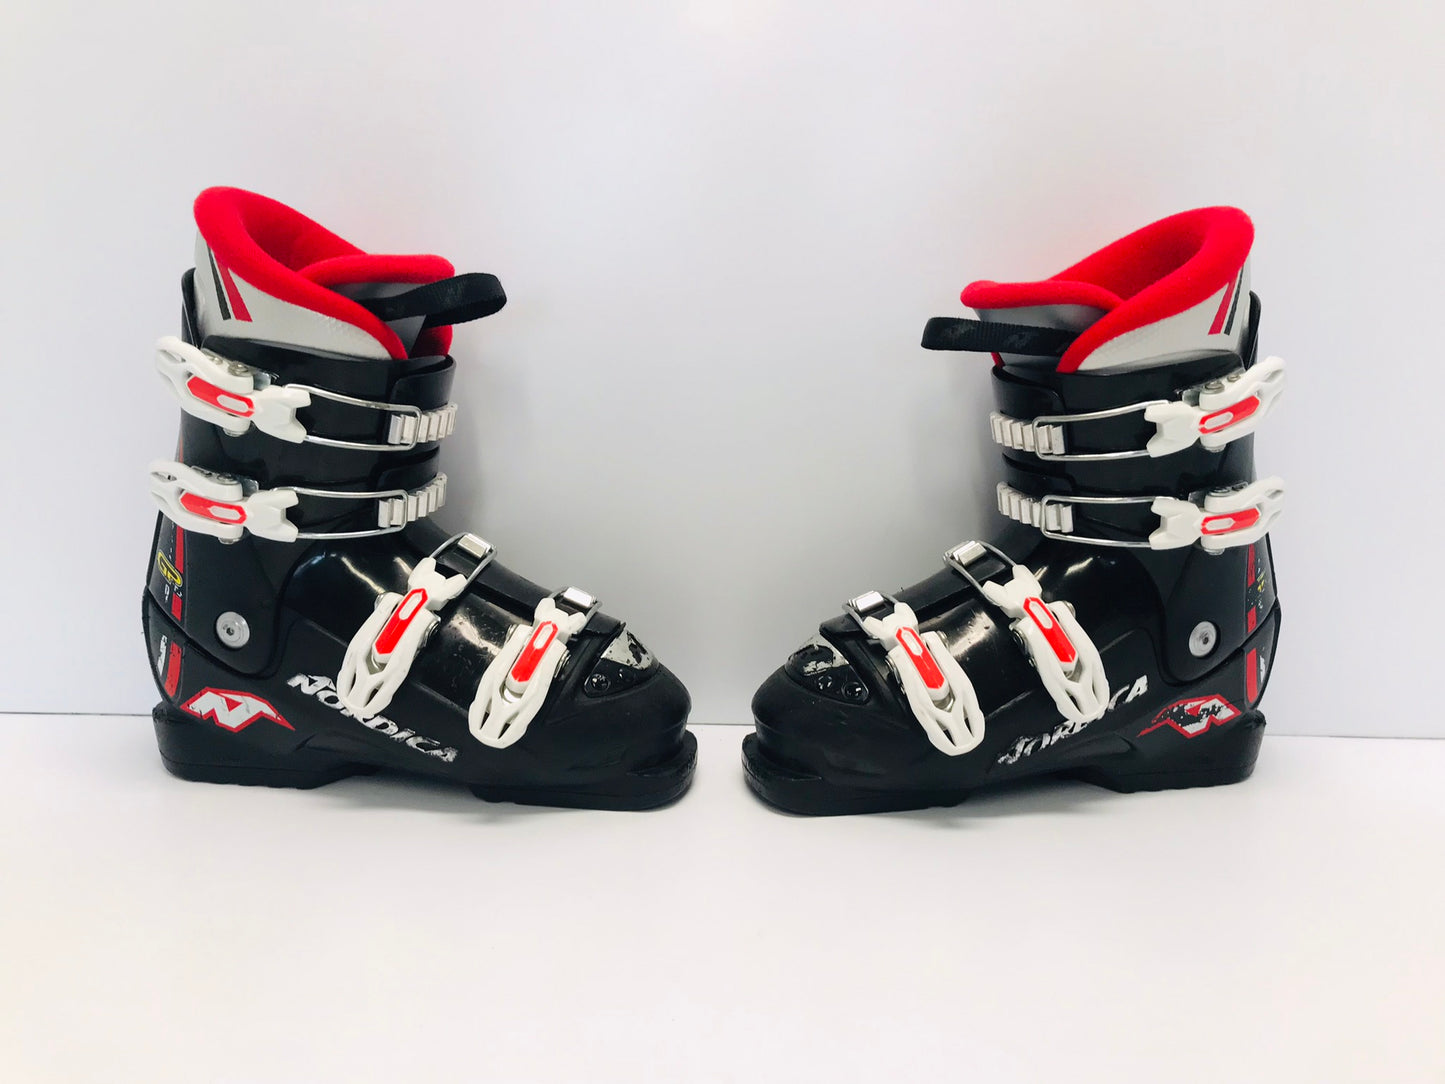 Ski Boots Mondo Size 23.0 Child Size 5-6  270 mm Nordica Black Red